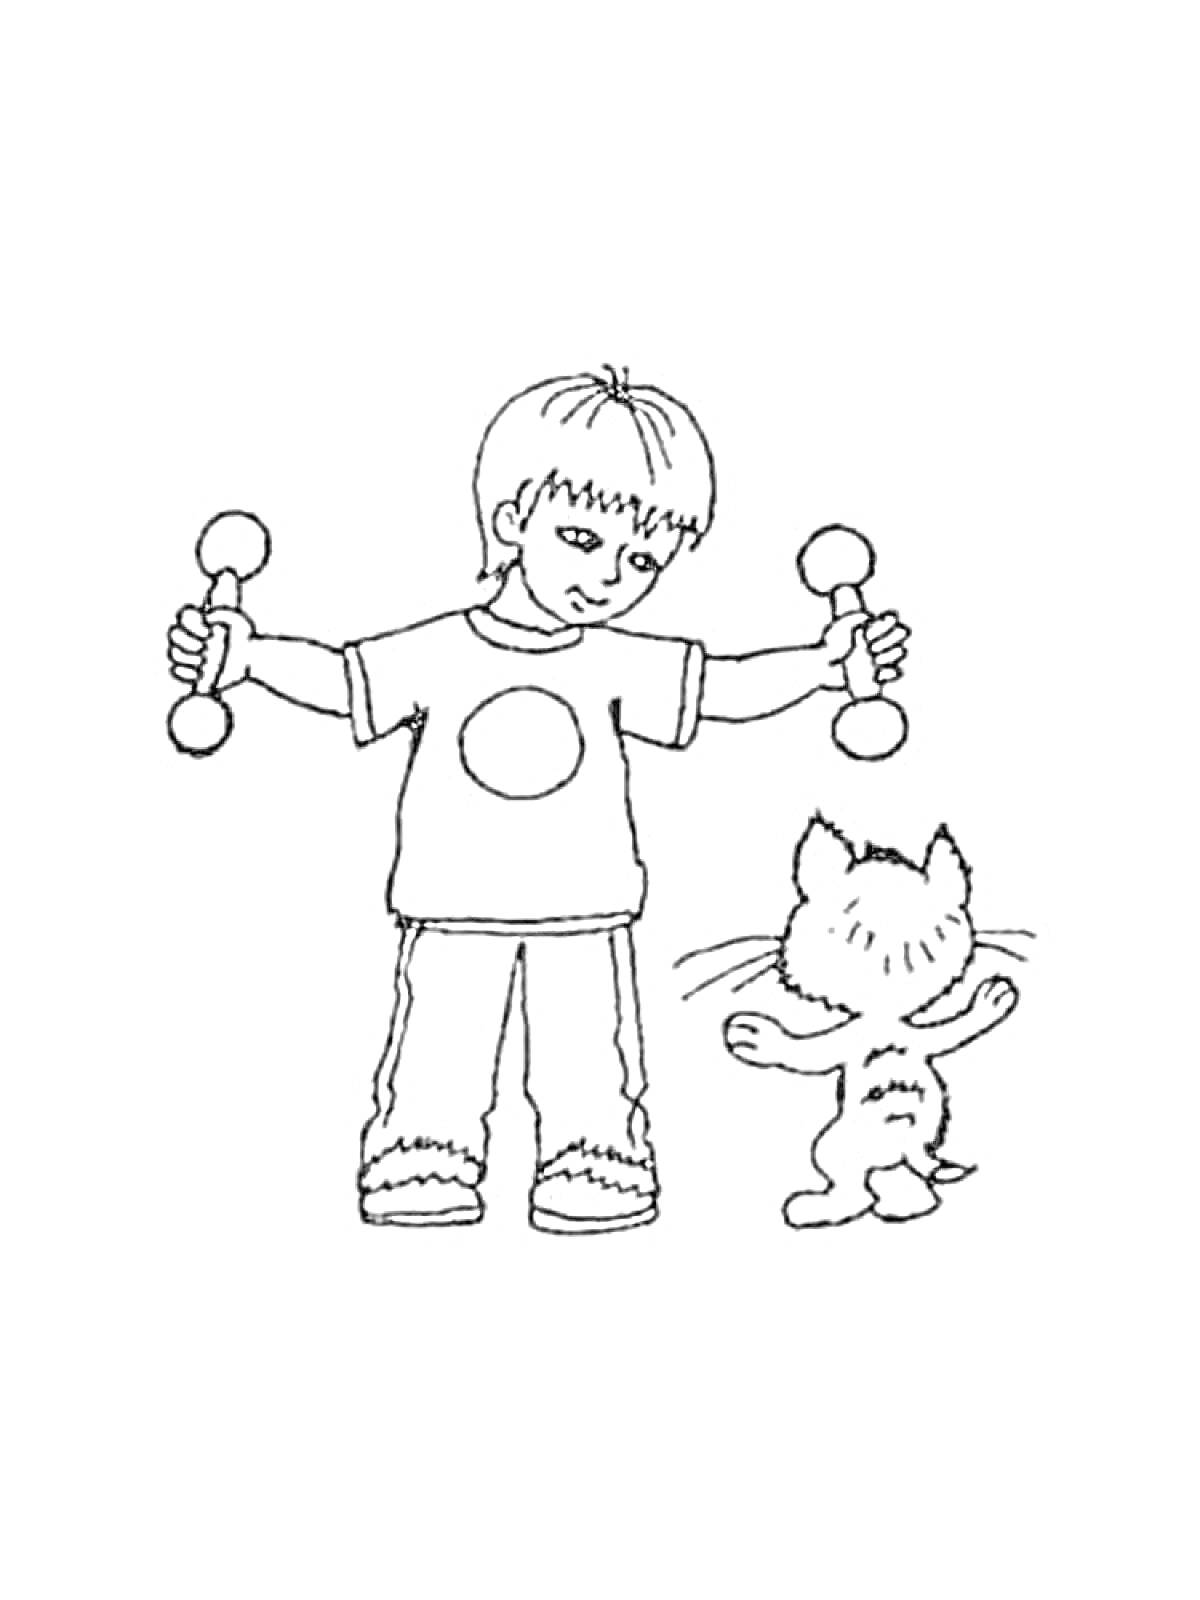 Раскраска Мальчик с гантелями и котенок, выполняющие зарядку